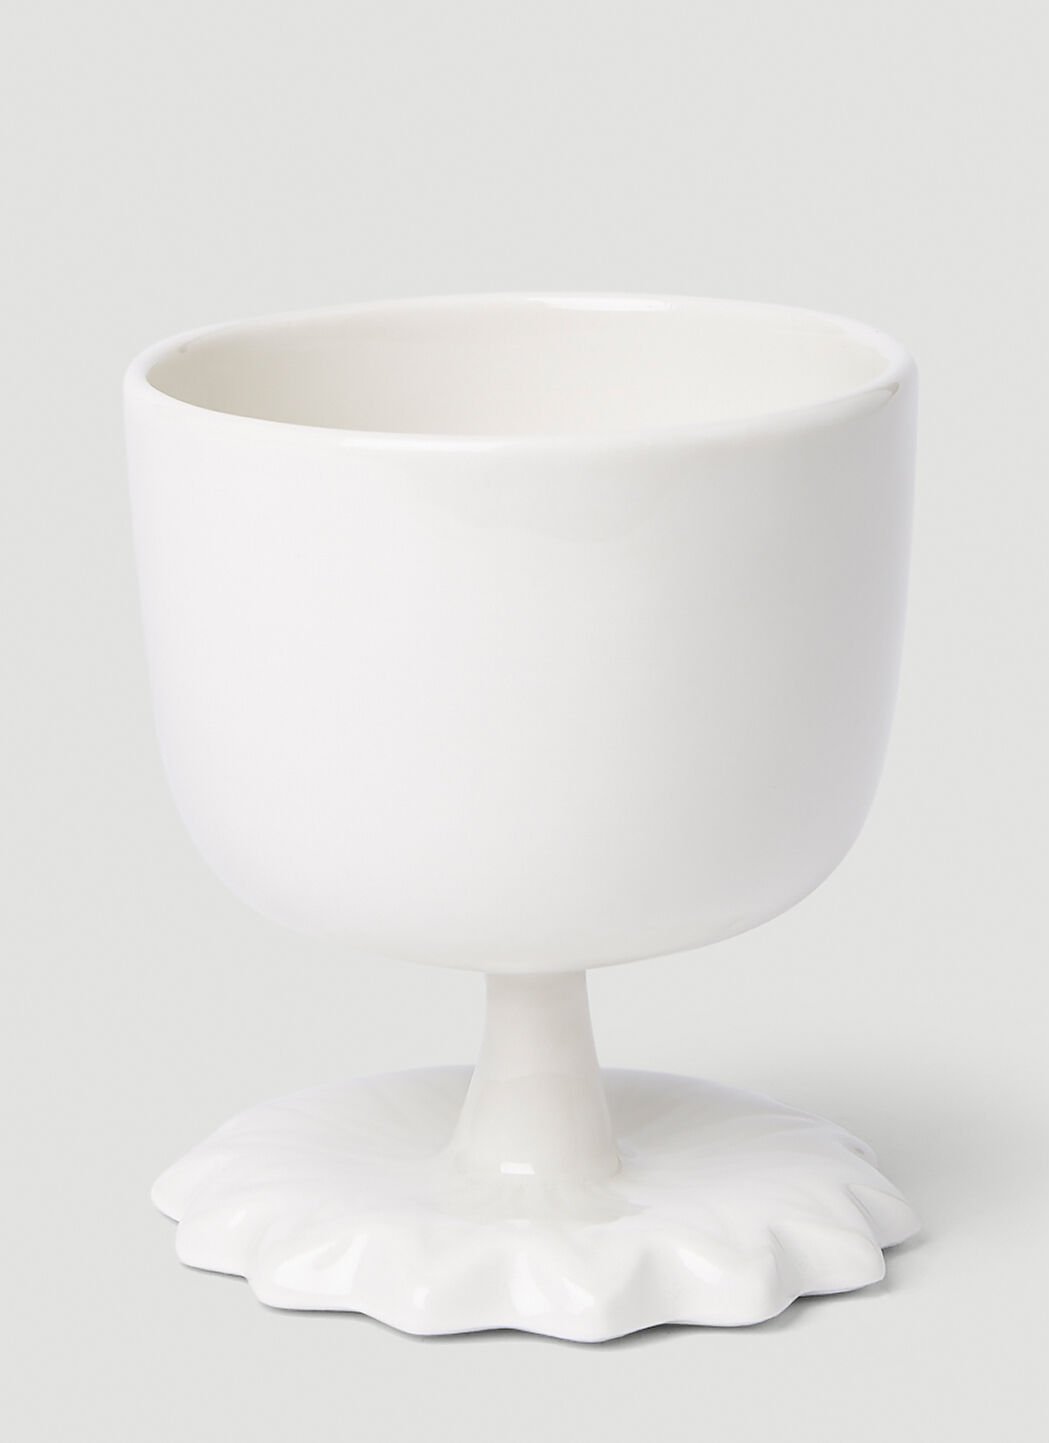 Jil Sander+ 花朵造型杯 黑色 jsp0151016